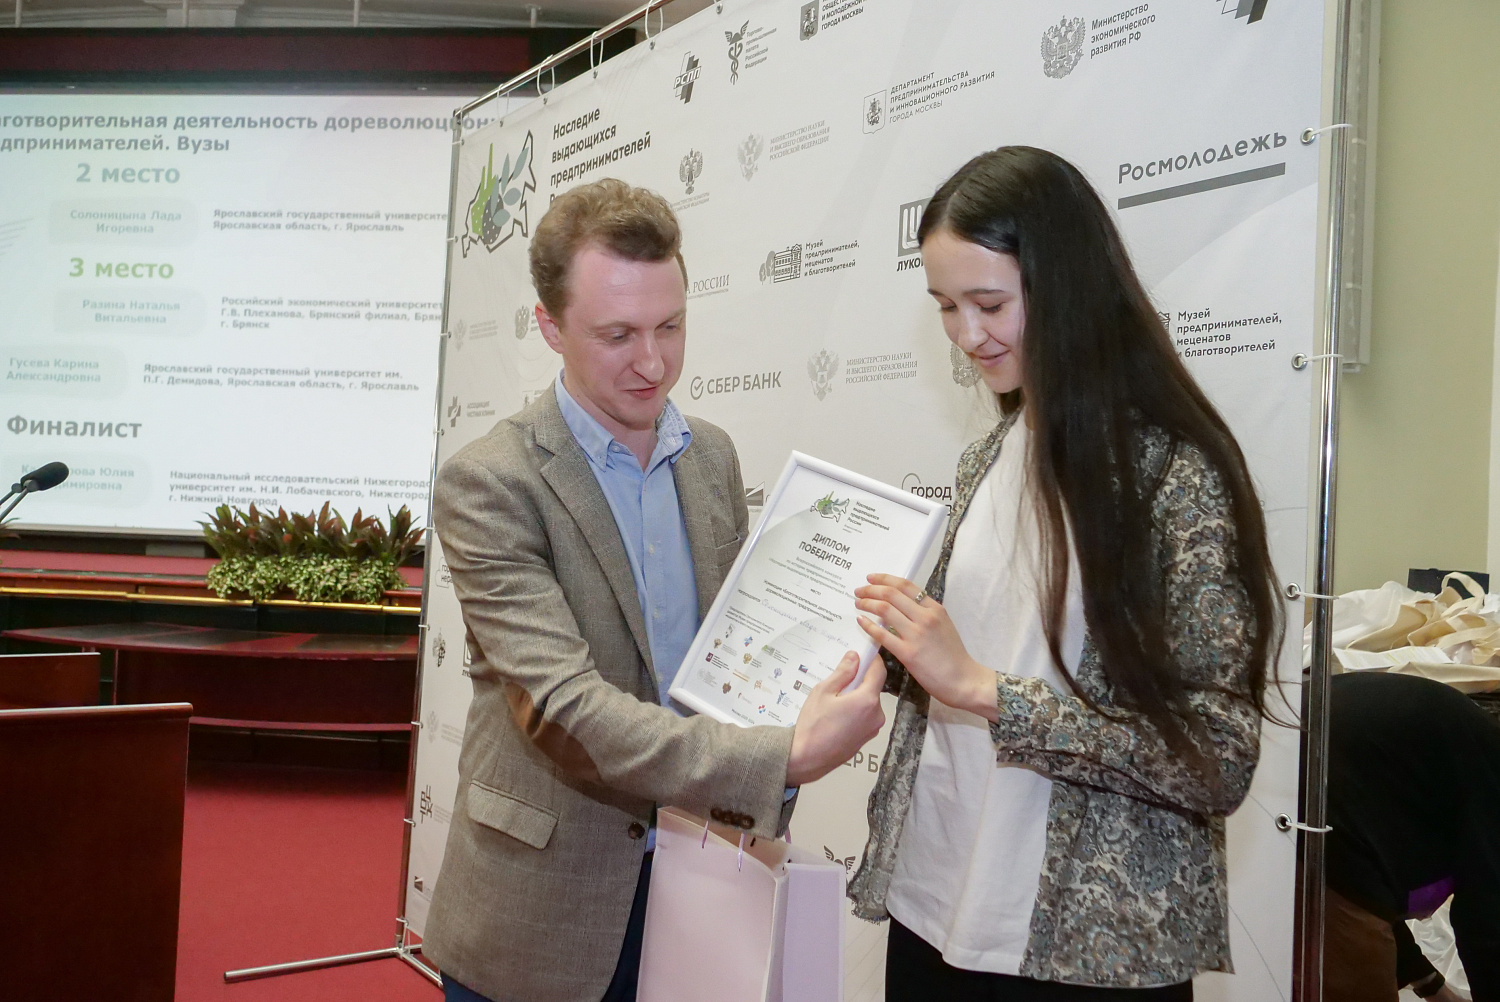 11 апреля в Конгресс-центре ТПП РФ состоялась торжественная церемония награждения победителей III Всероссийского конкурса по истории предпринимательства